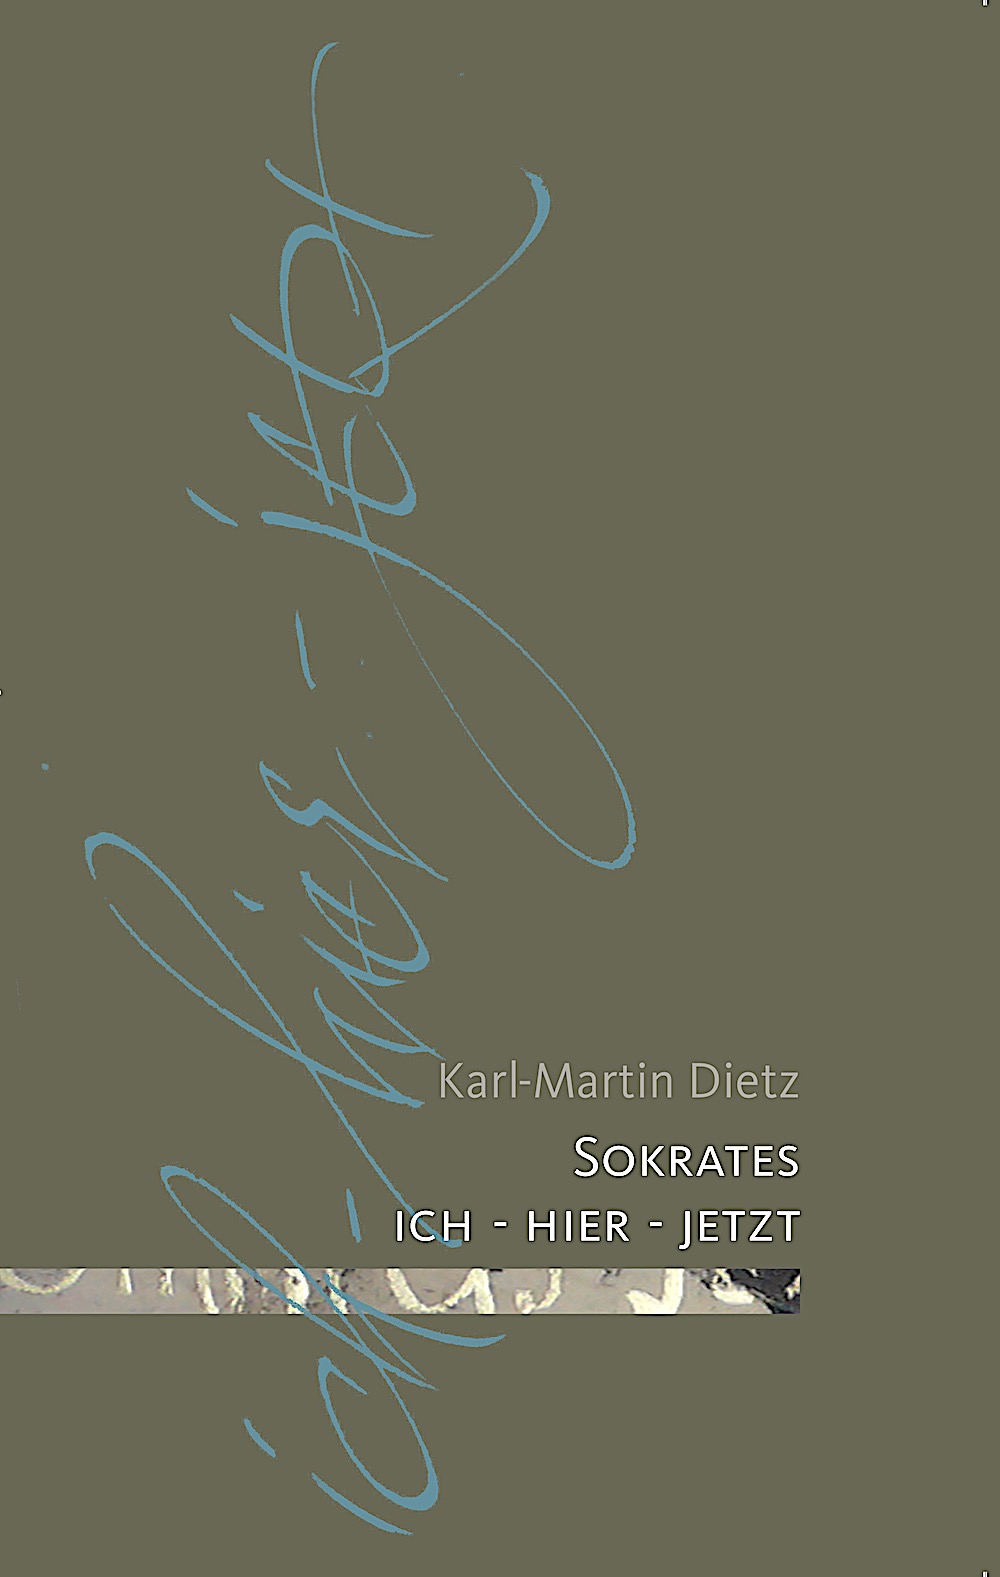 MENON-Titelbild: "Sokrates: ich - hier - jetzt" von Karl-Martin Dietz